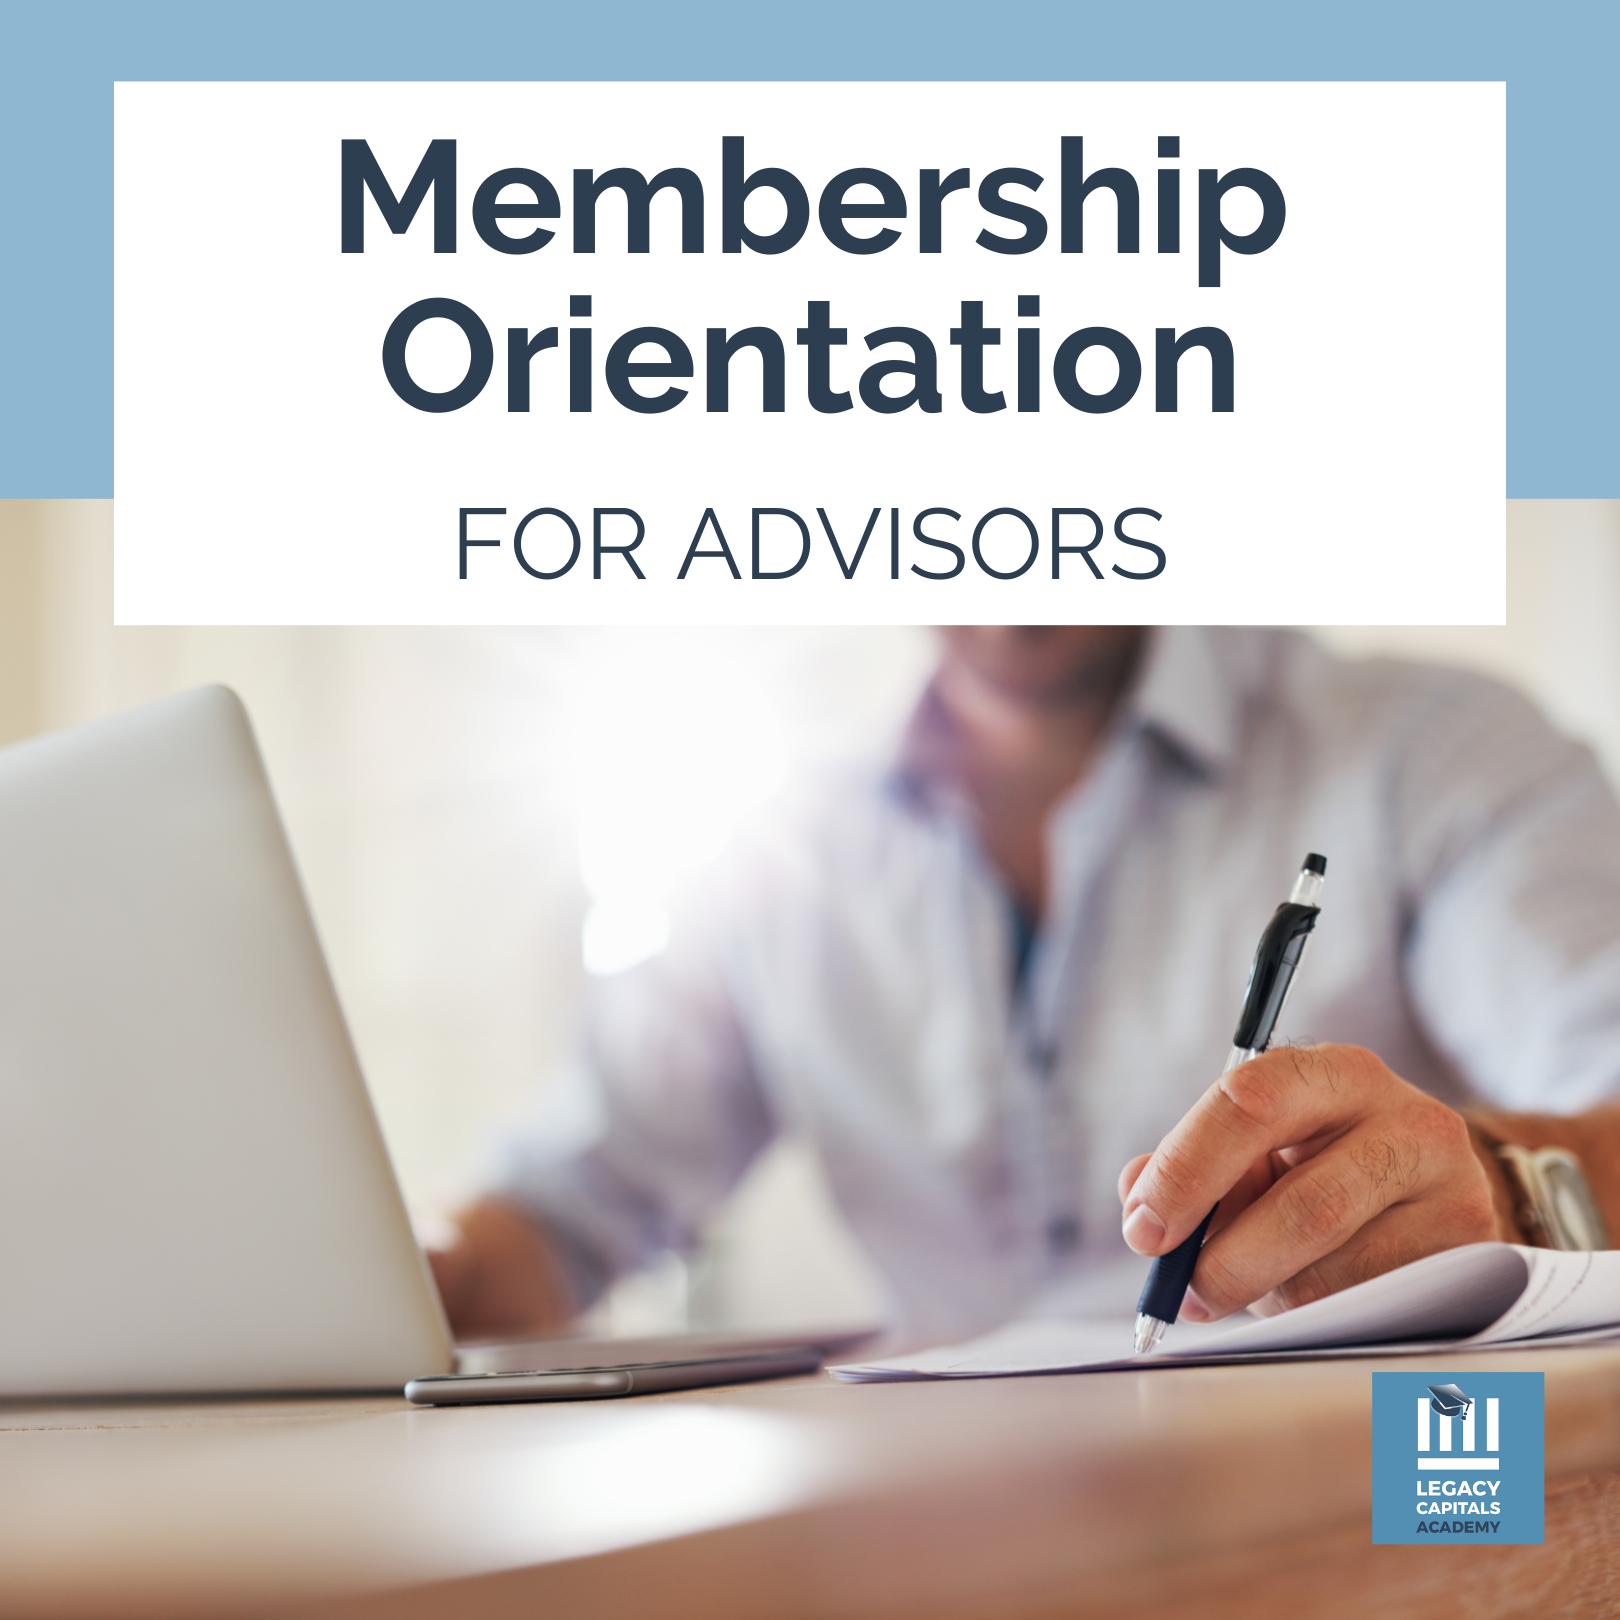 *Membership Orientation for Advisors